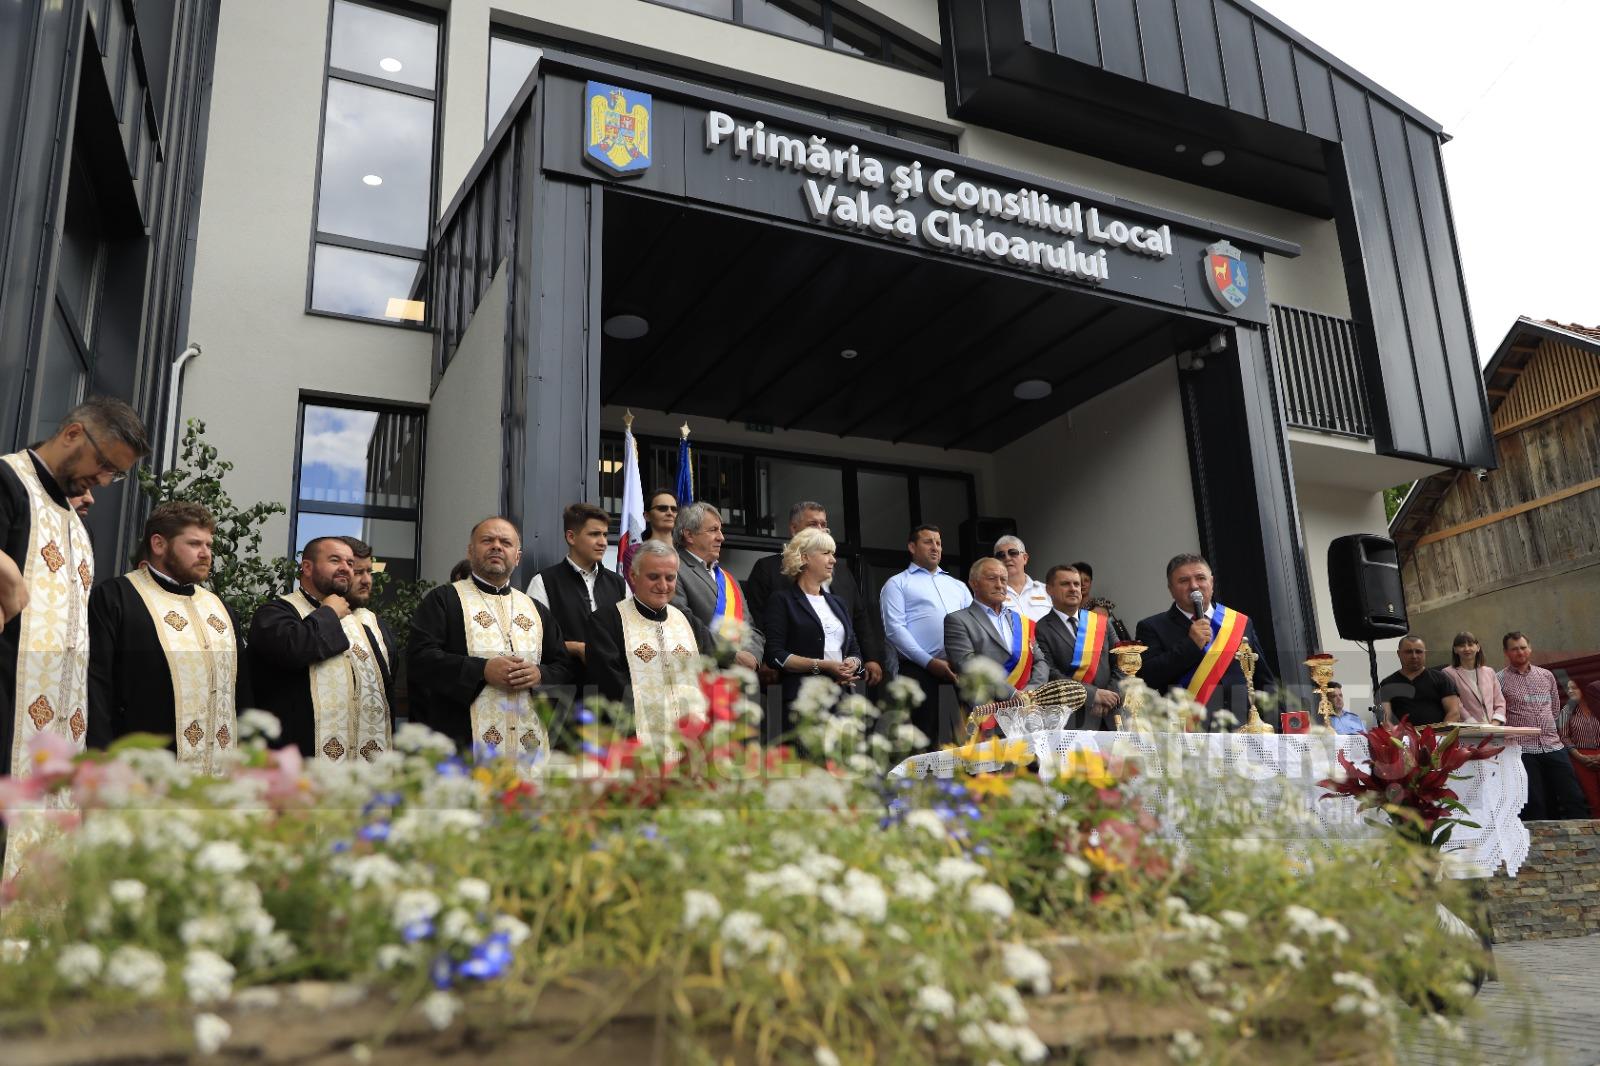 A fost inaugurat noul sediu al Primăriei Valea Chioarului. Gabriel Zetea a fost prezent la eveniment